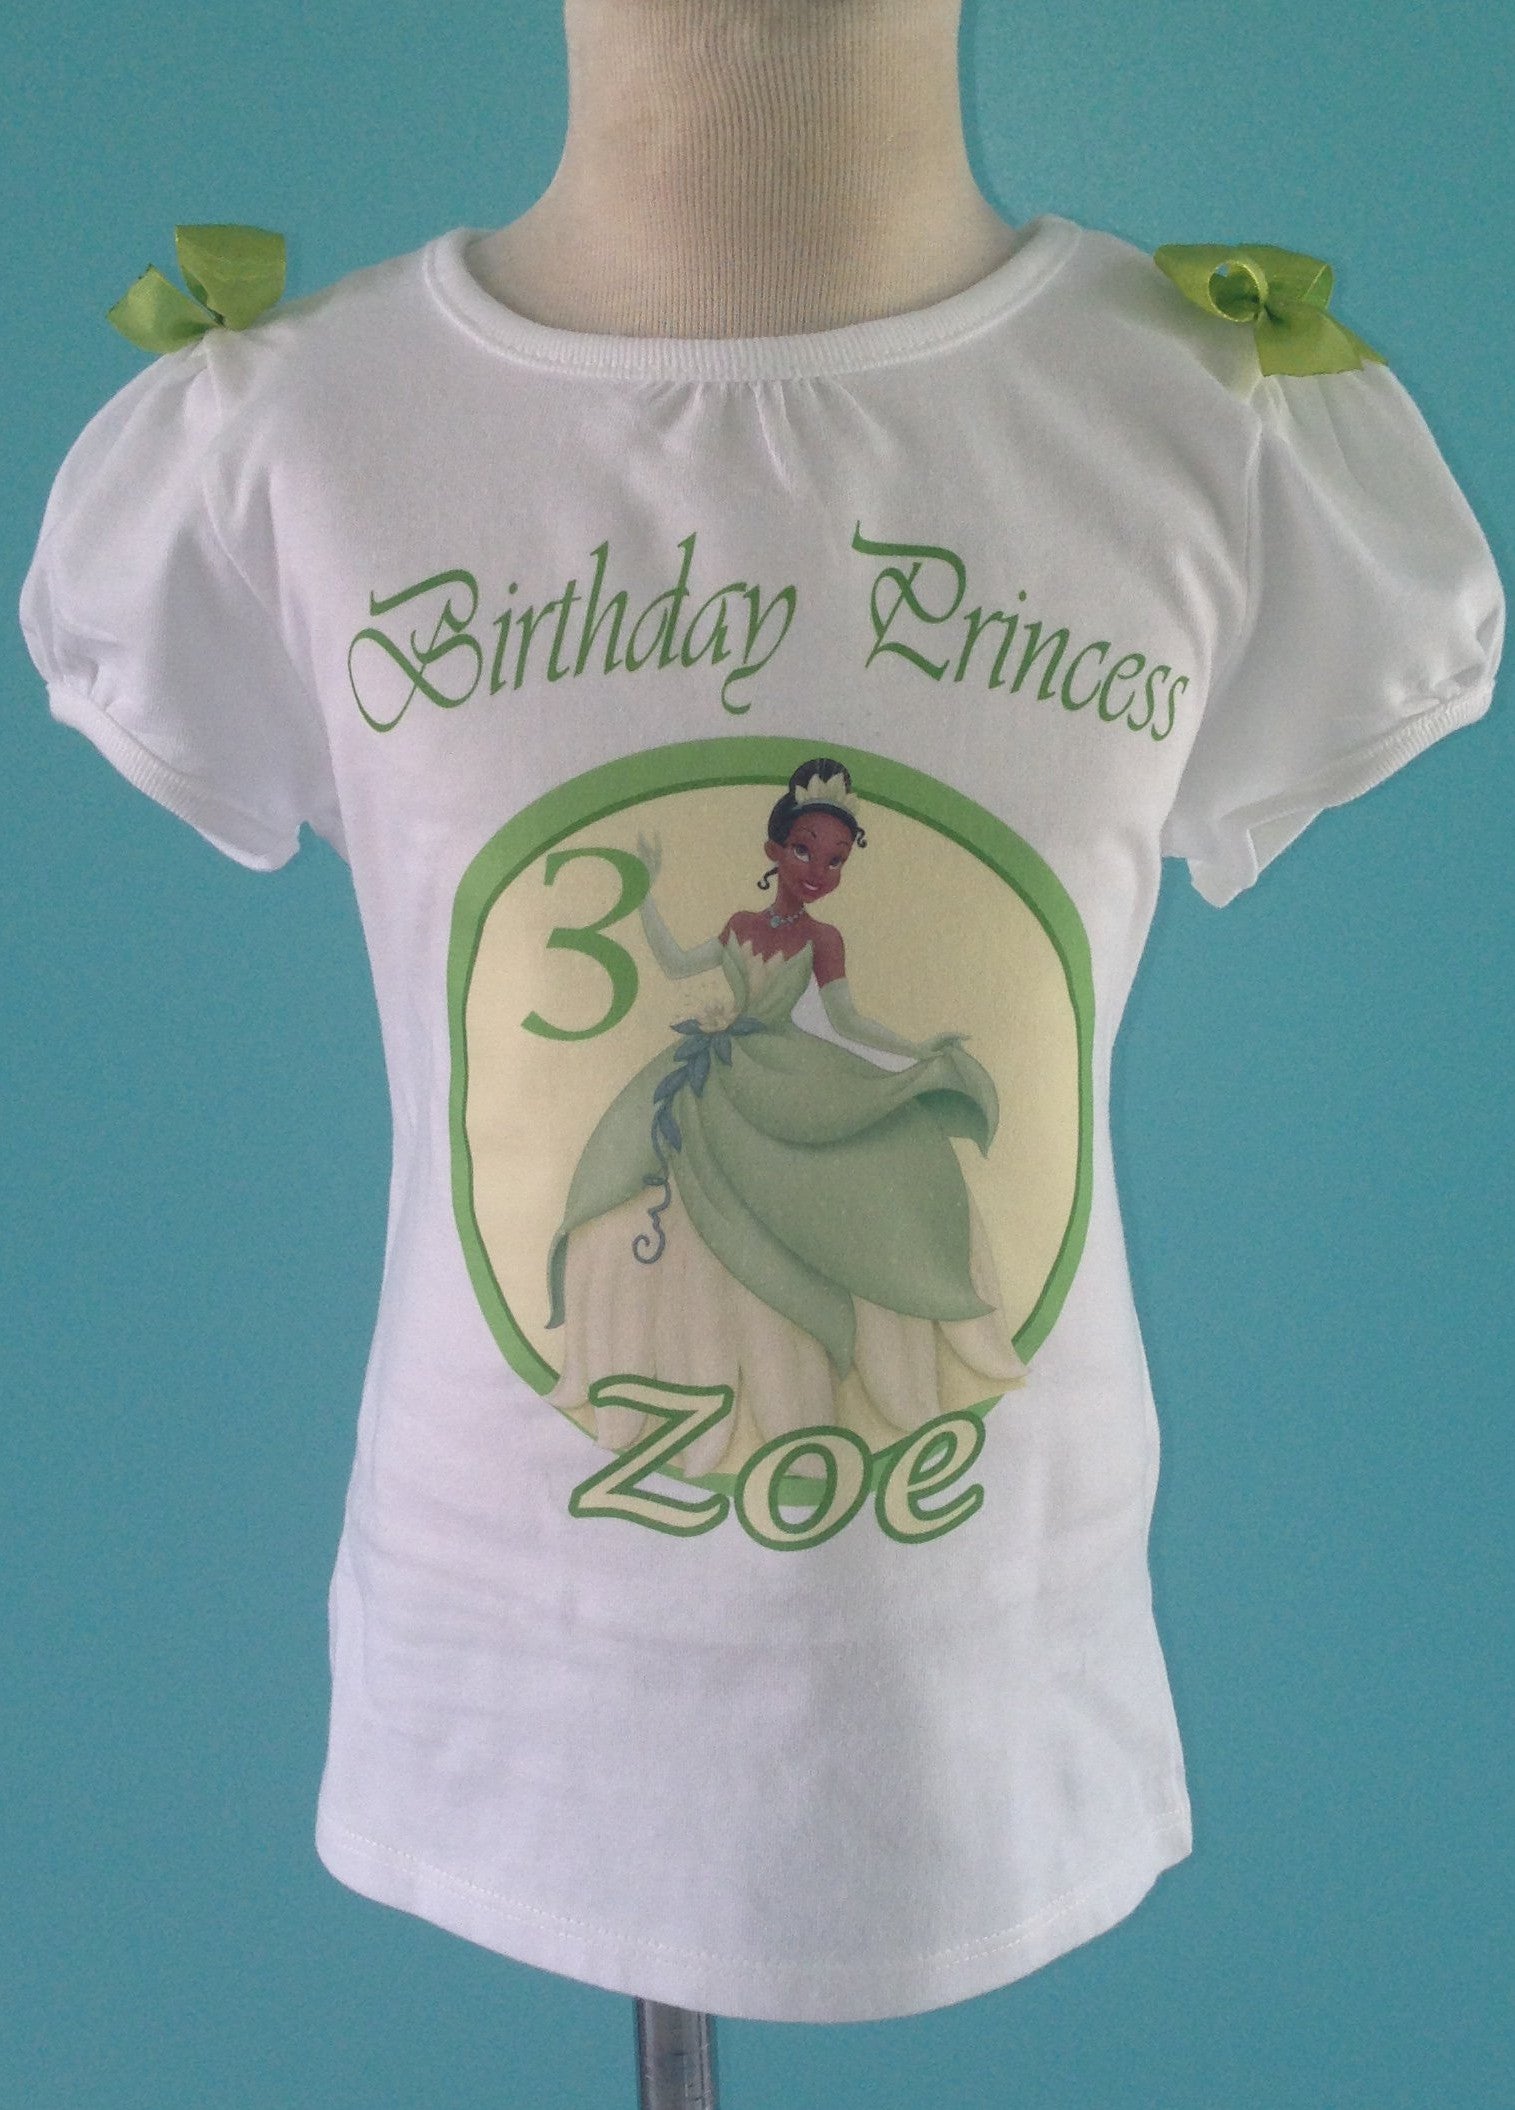 Princess Tiana Shirt, The princes and the frog, Birthday Girl Shirt